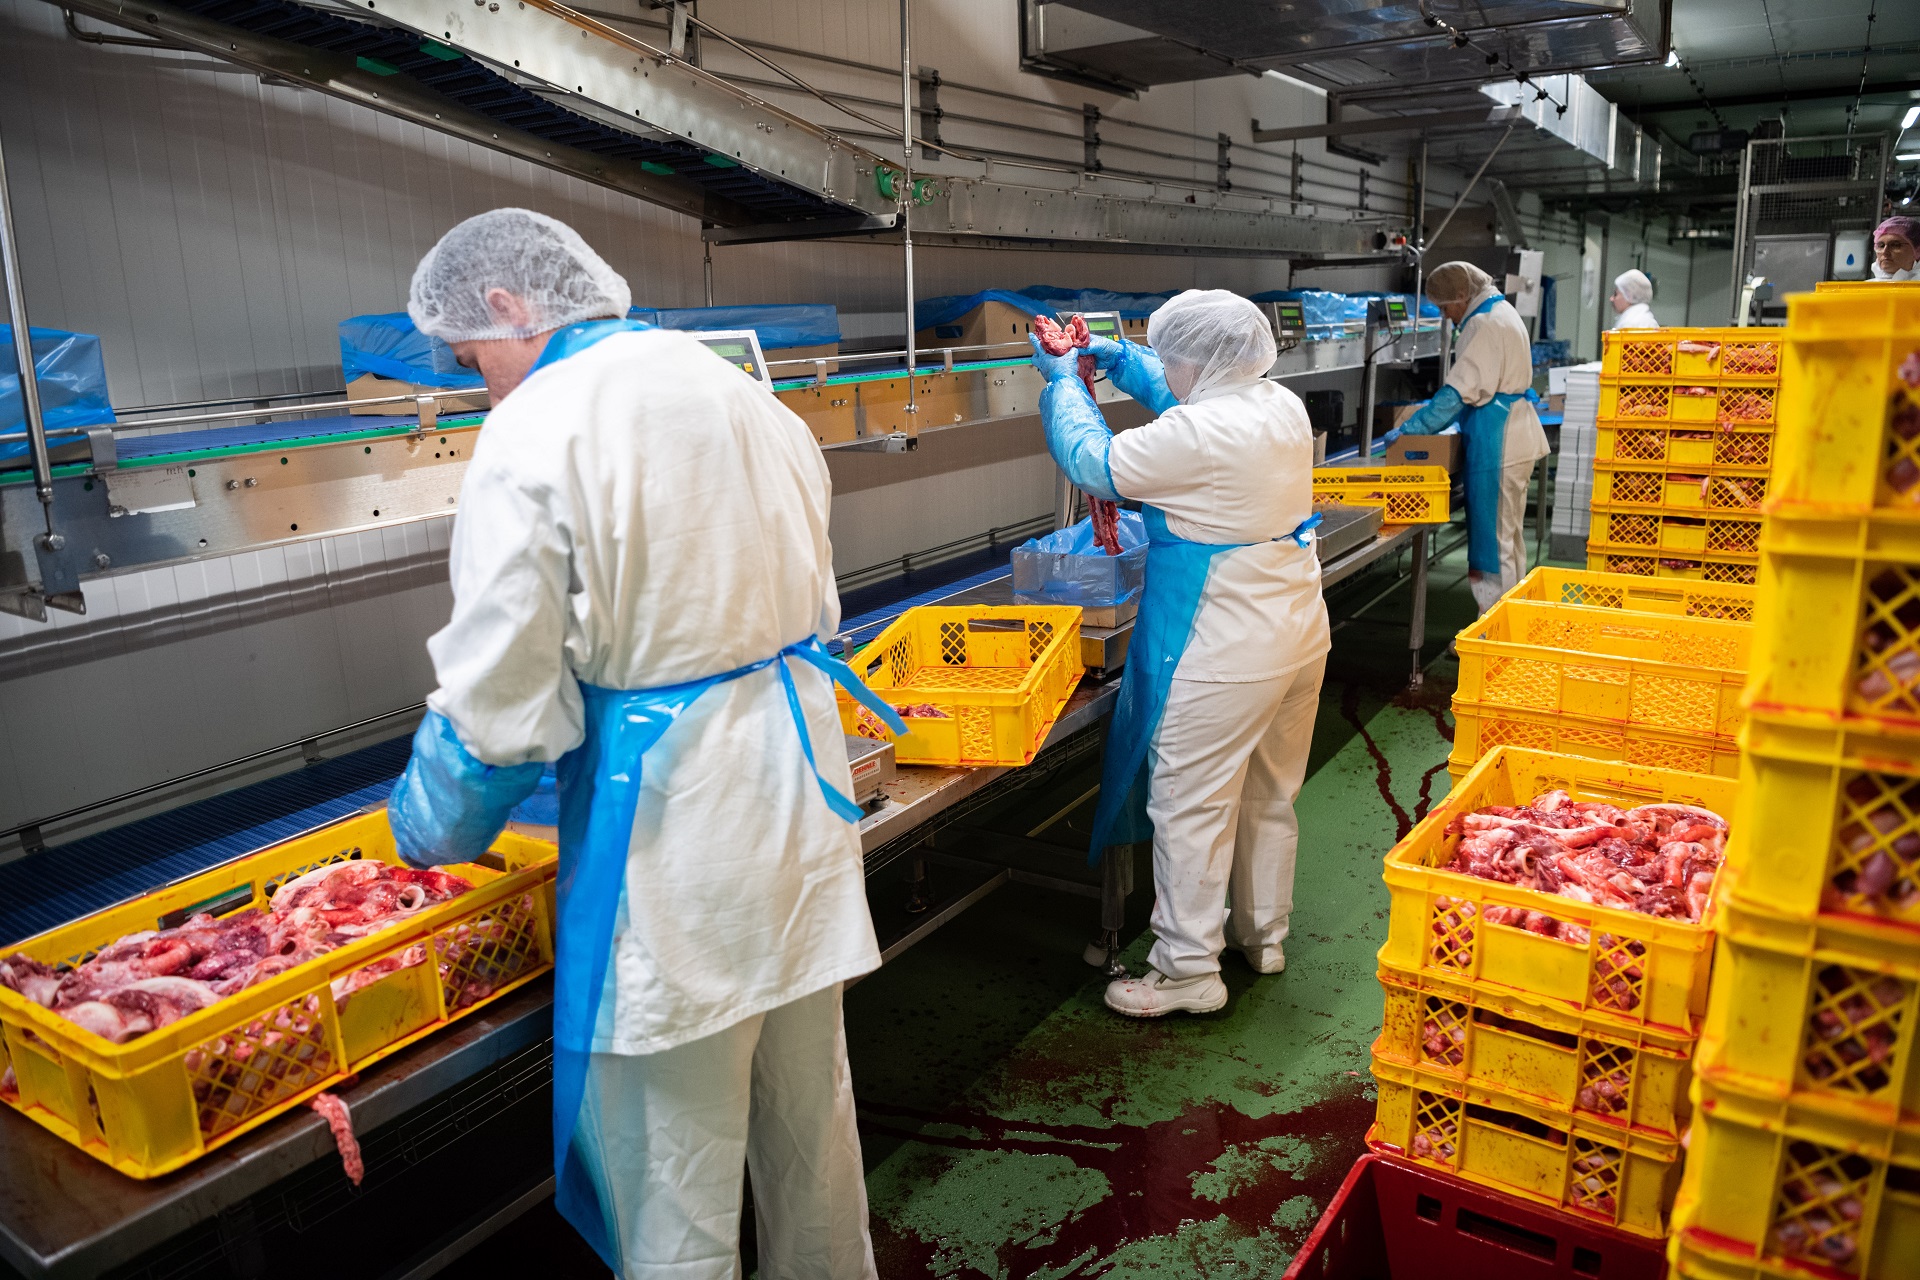 Fleischindustrie: Wie Leiharbeiter weiter ausgebeutet werden